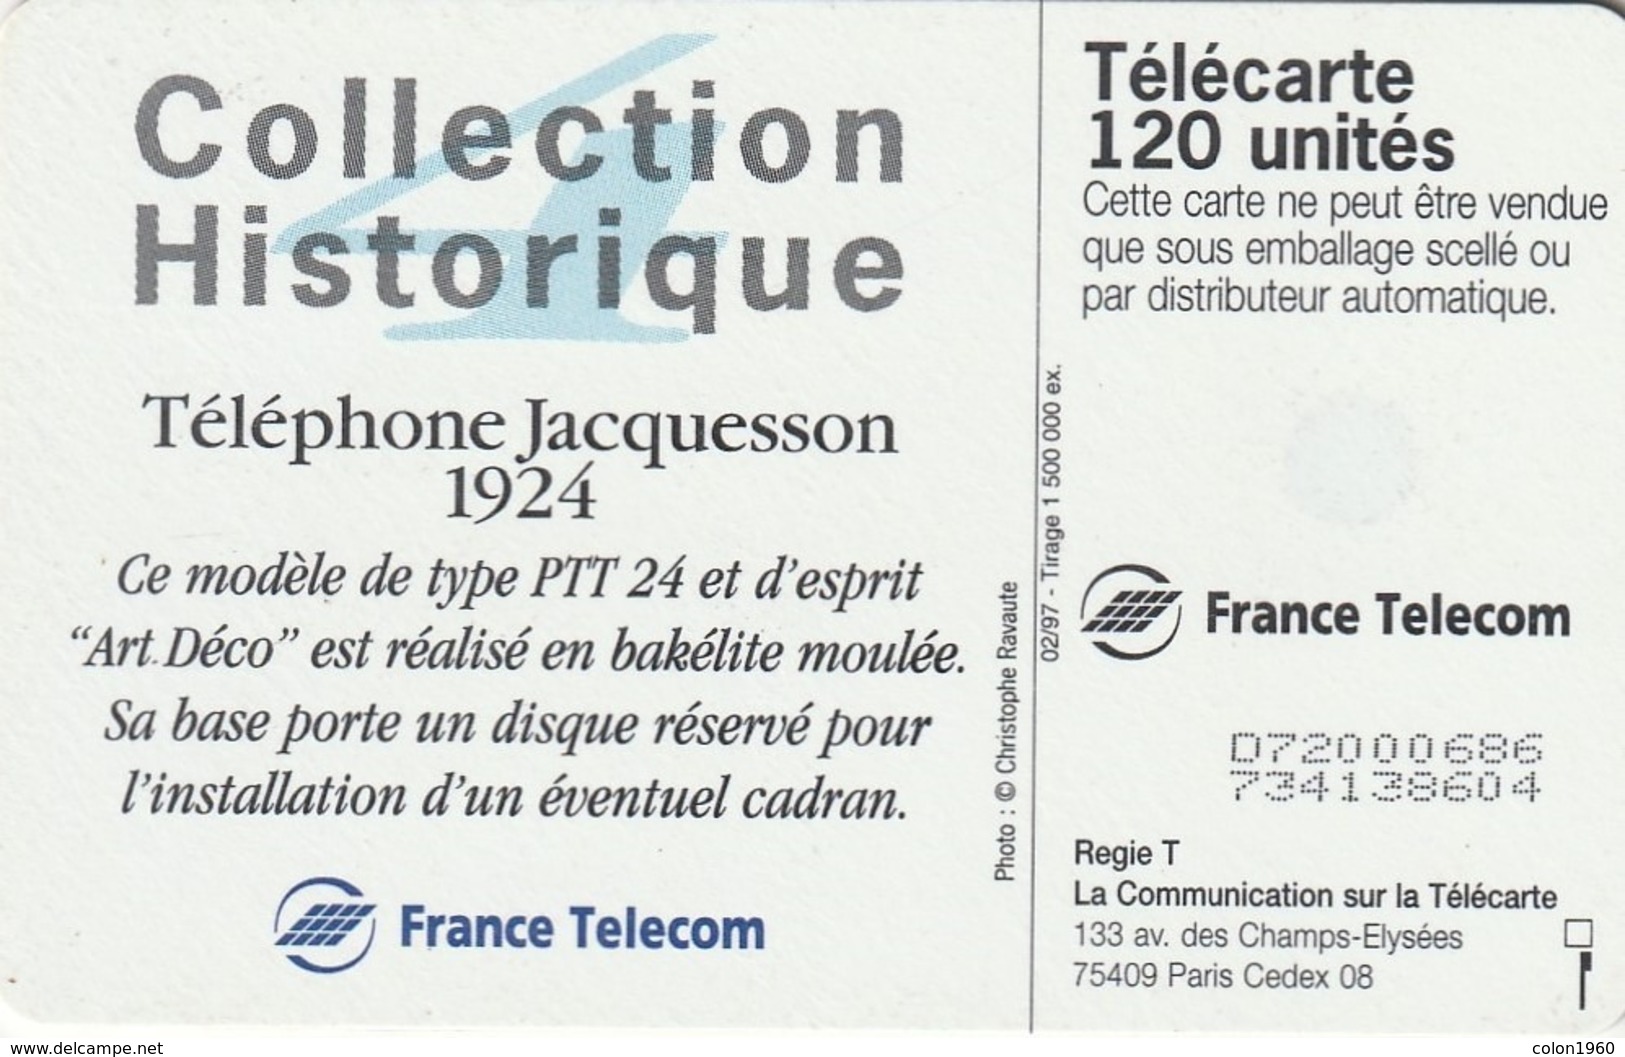 FRANCIA. Collection Historique N. 04 - Téléphone Jacquesson 1924. 120U. 02/97. 0719. (259). - 1997